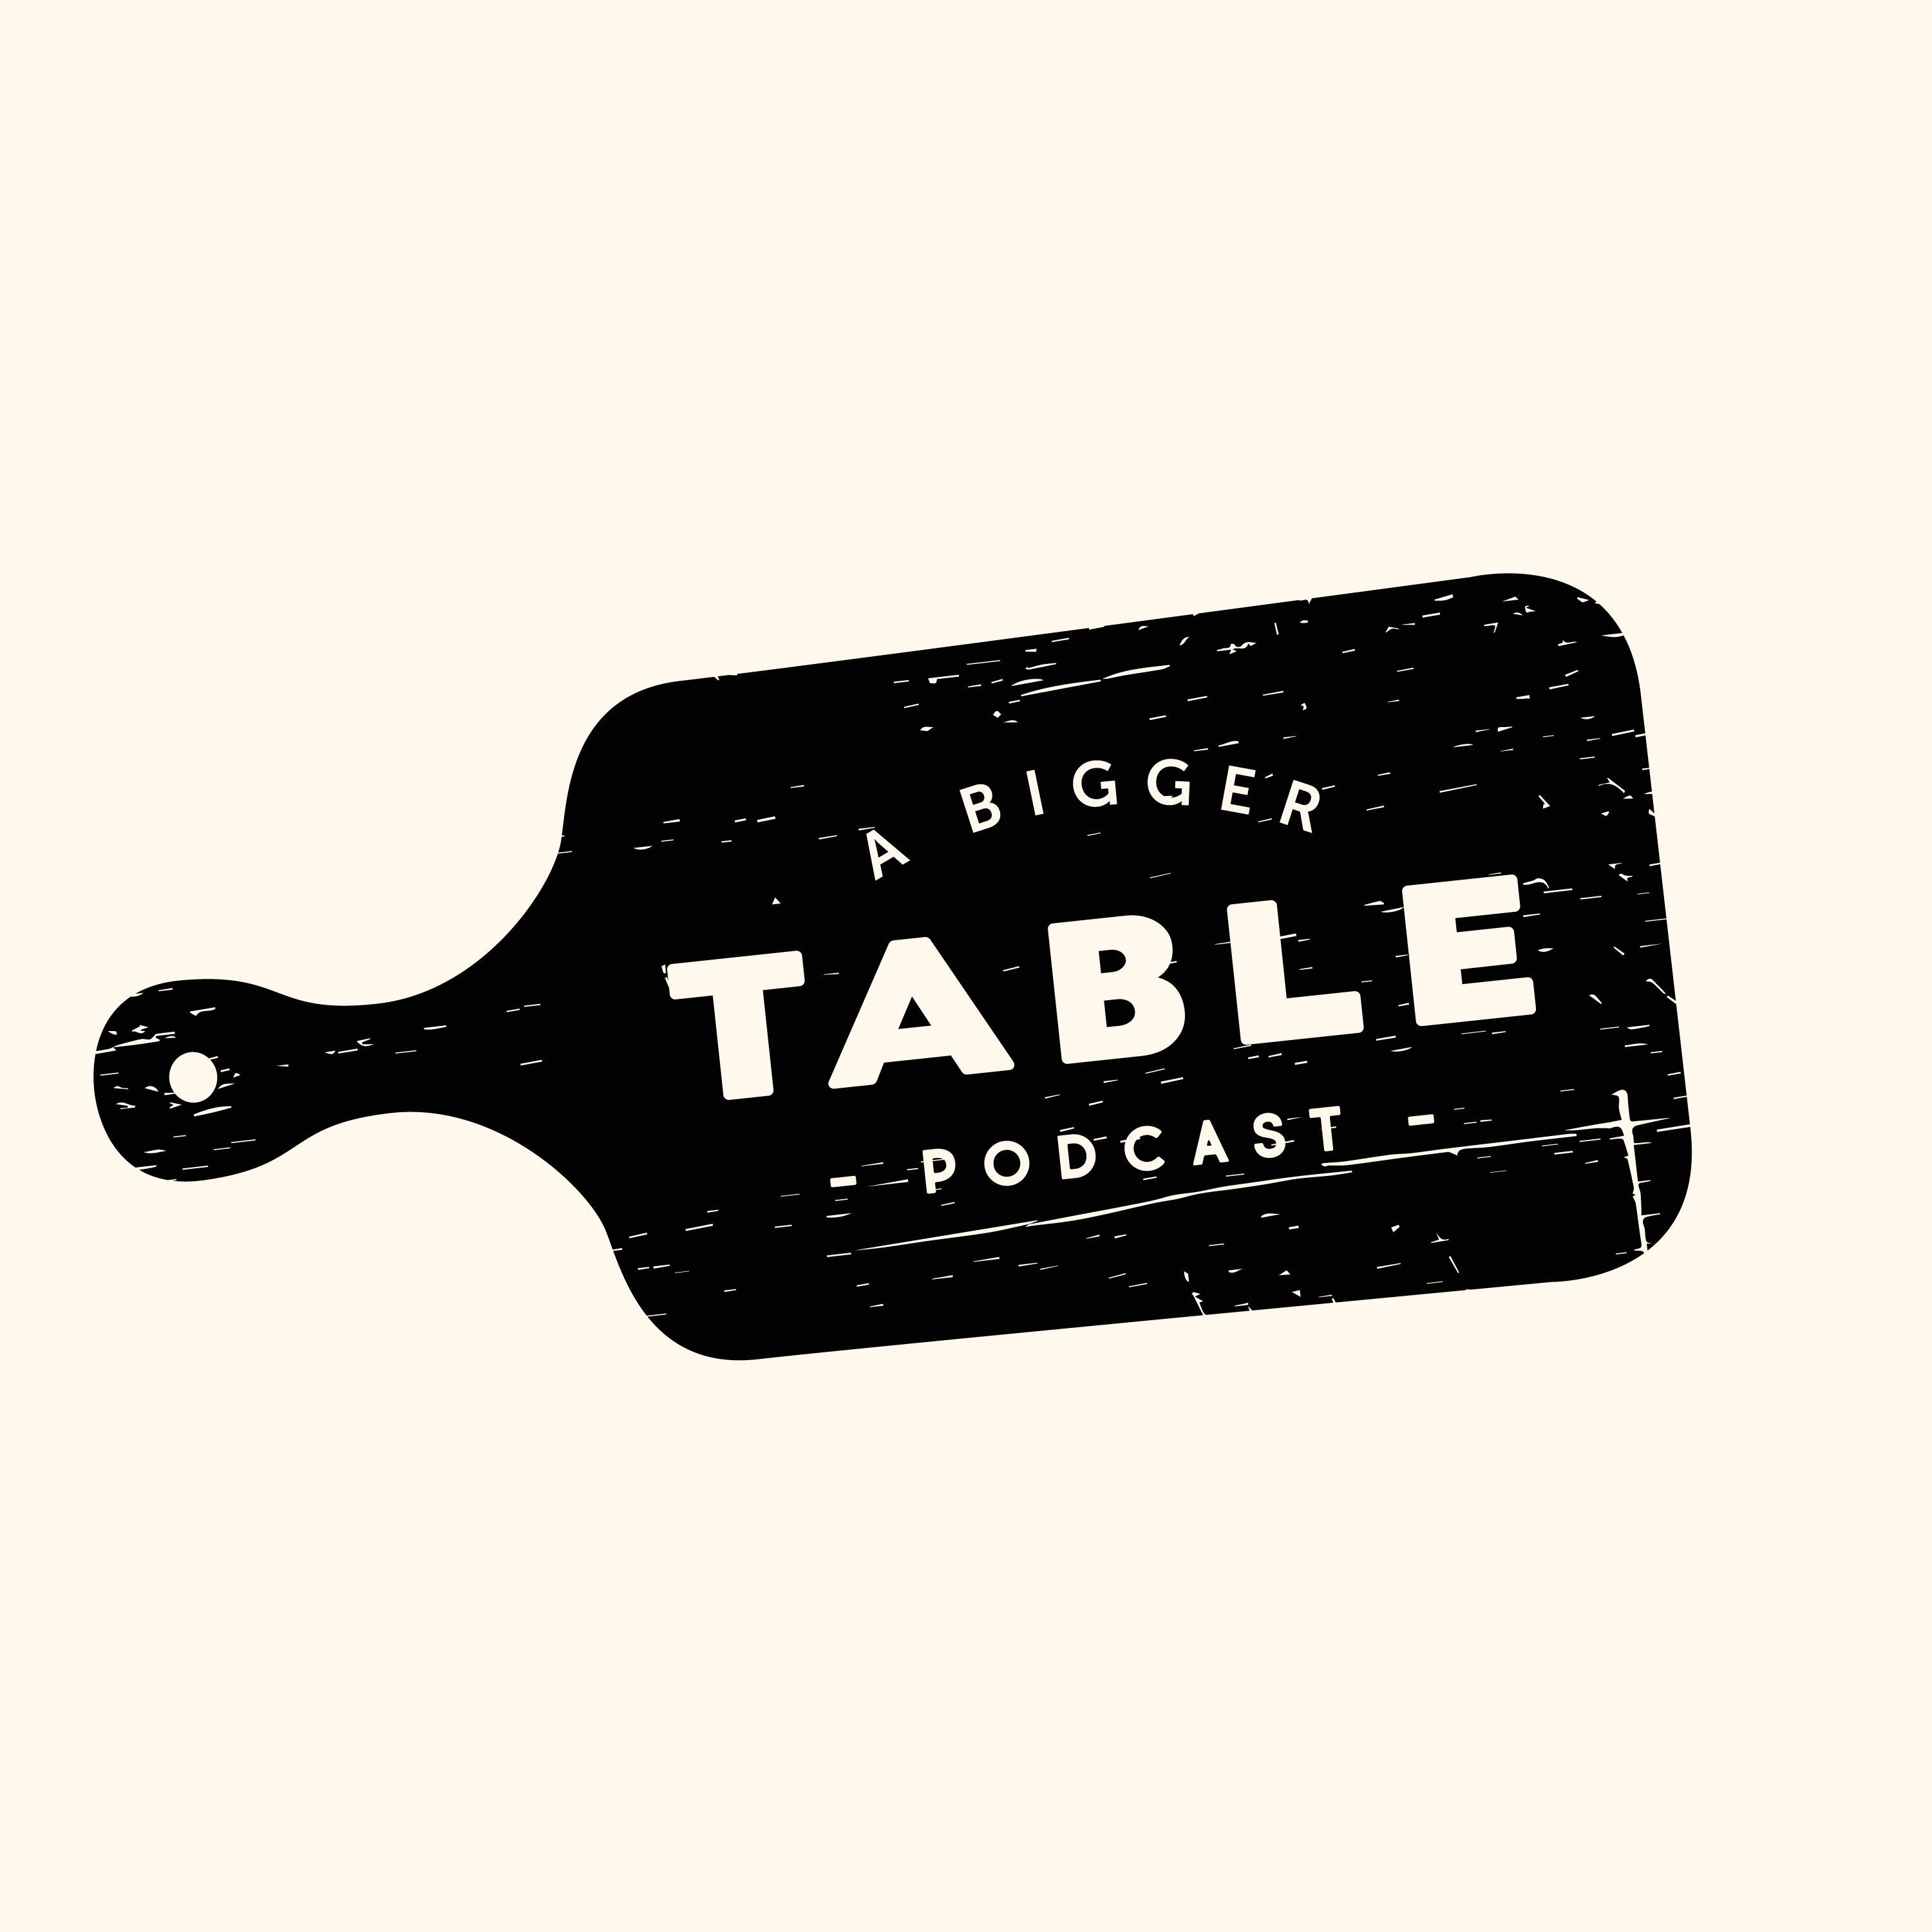 A Bigger Table